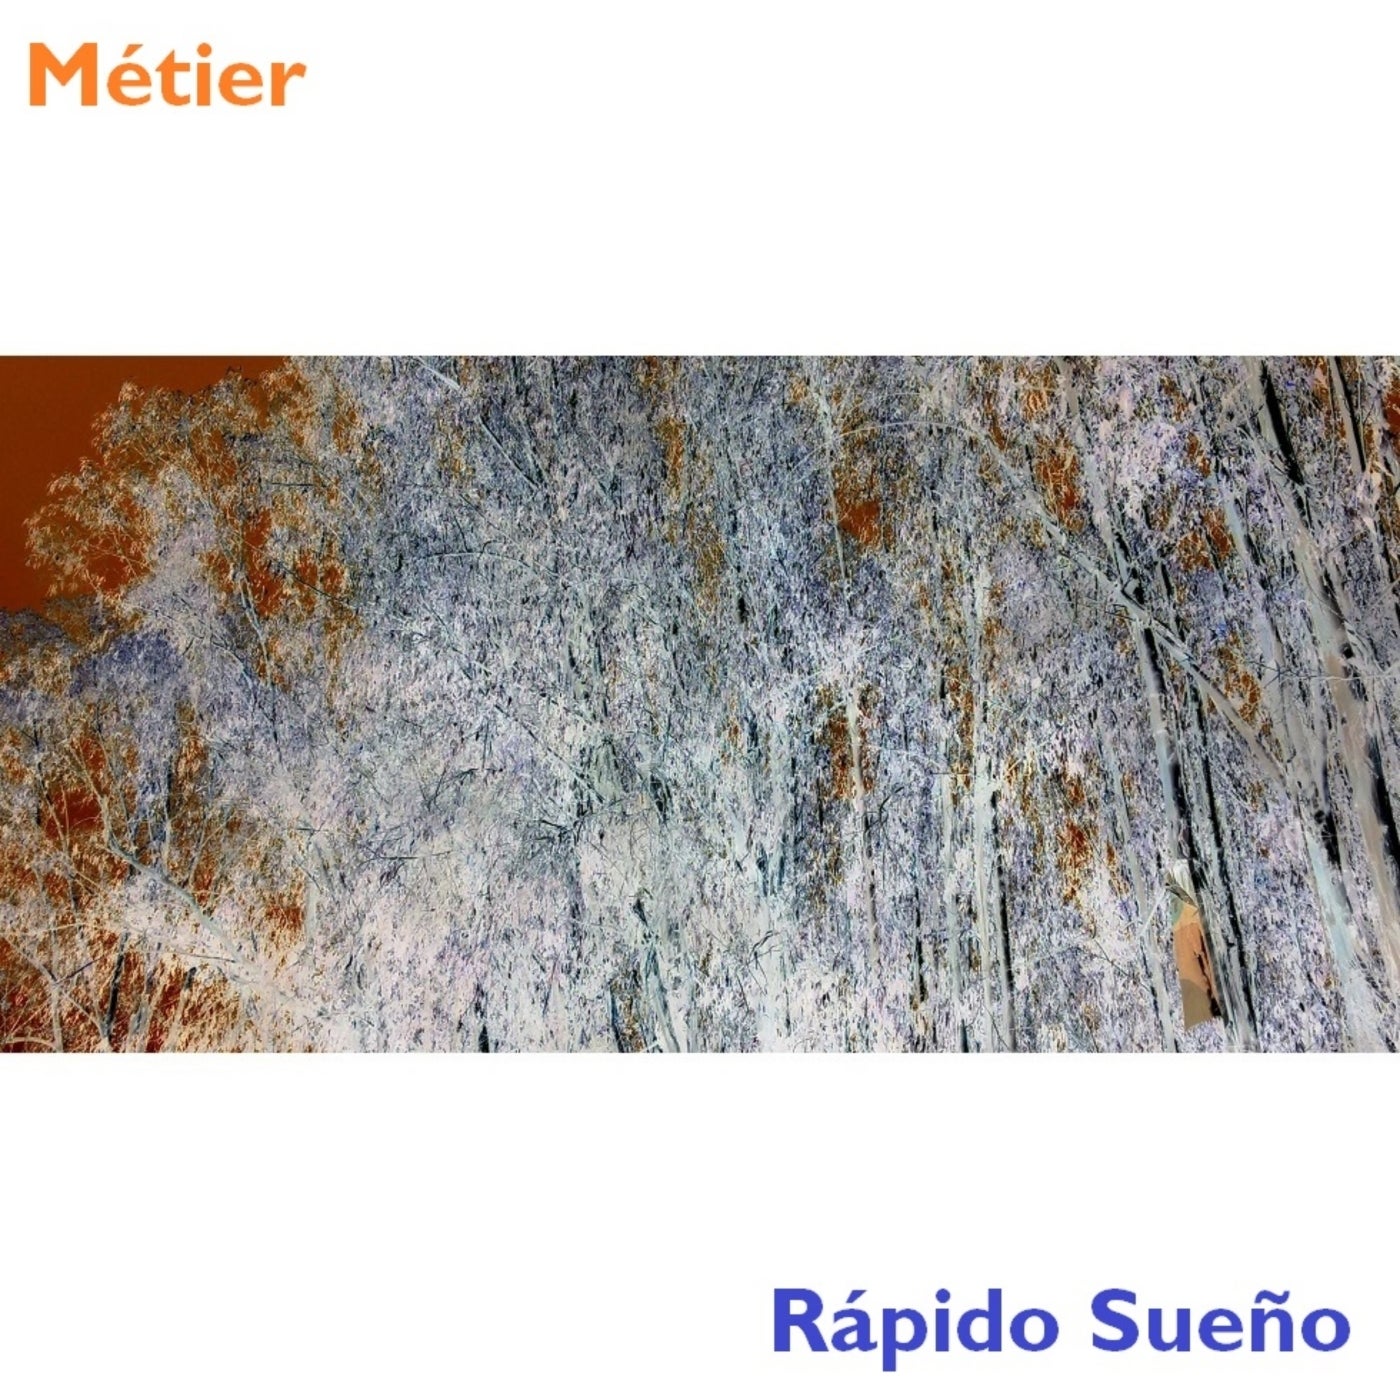 Metier – Rápido Sueño [PRECISION052]